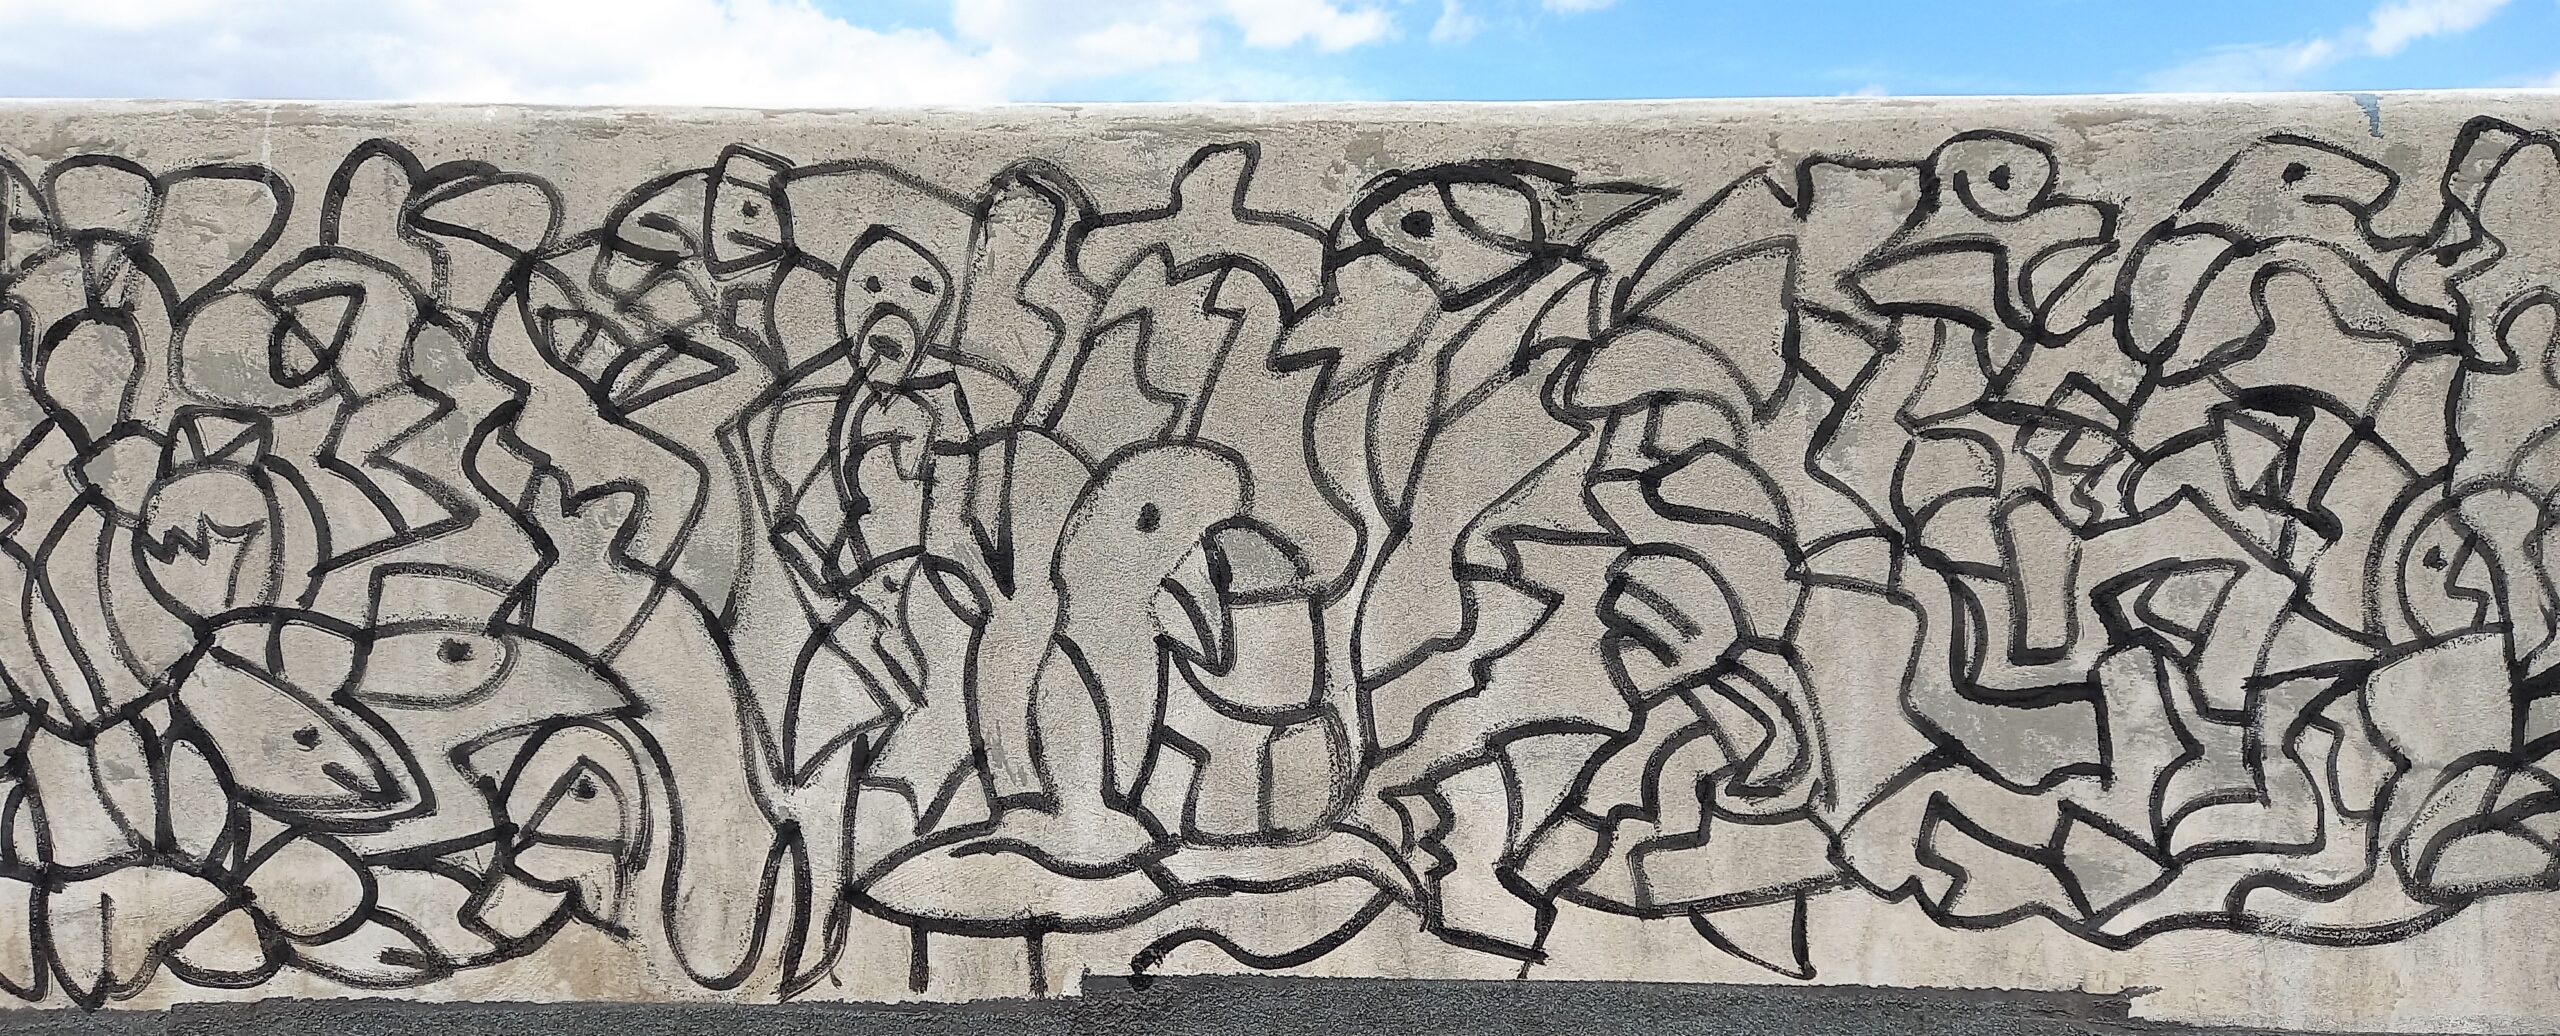 4 contemporay art in sicily mural cortile delle nevi claudio arezzo di trifiletti